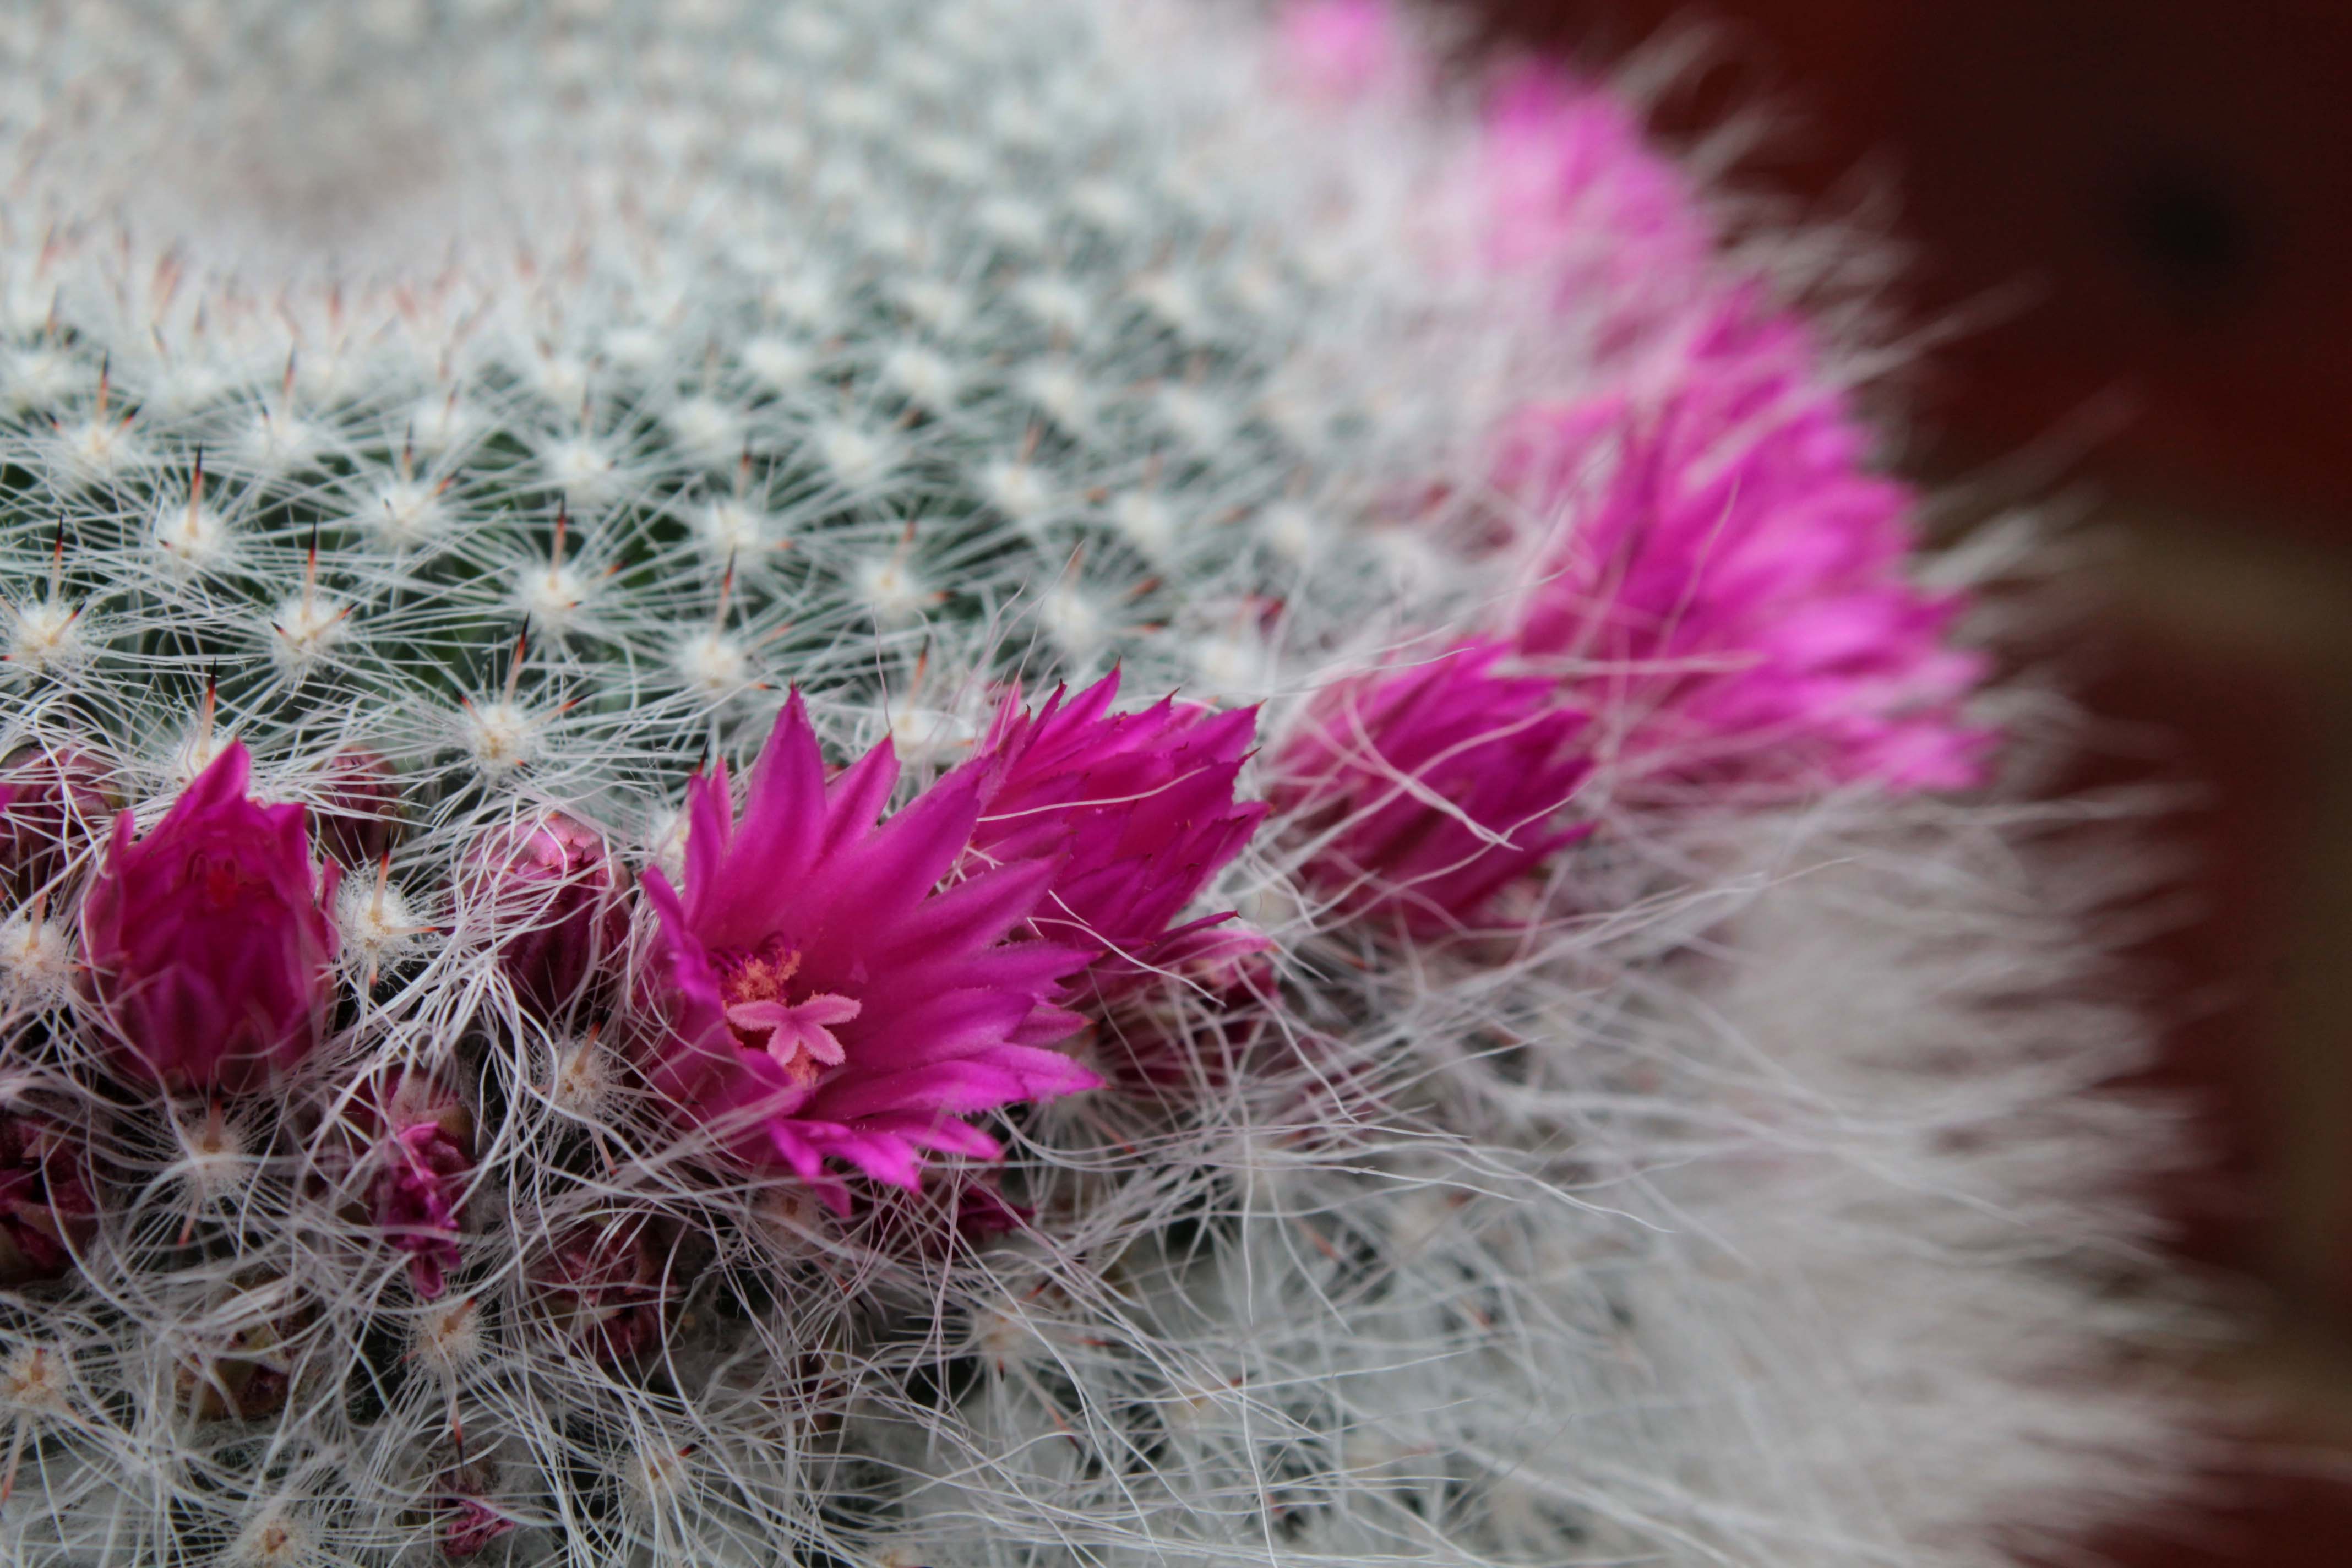 Cactus Crazy – An Enchanted Place